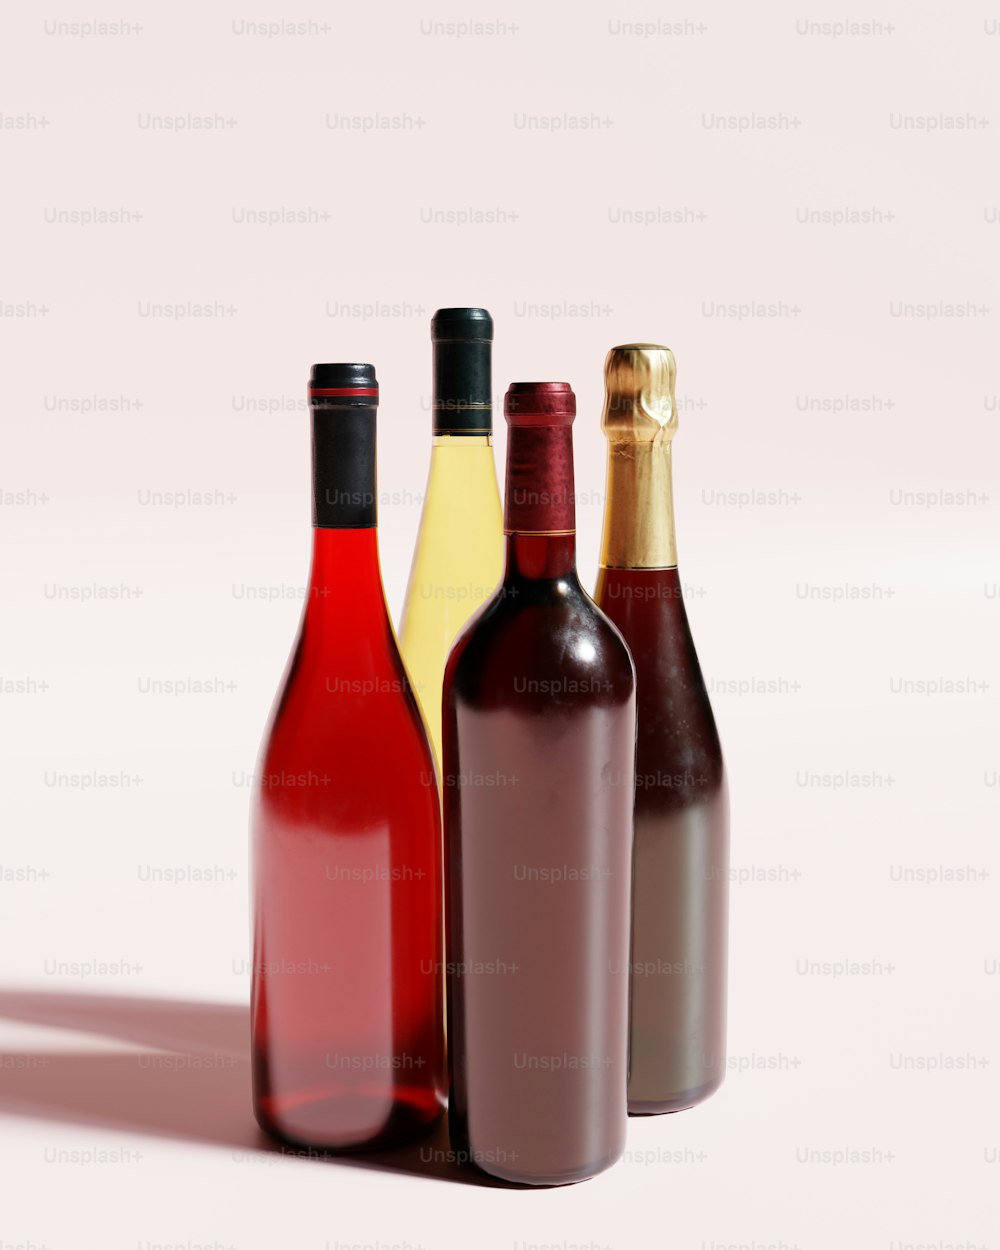 나란히 앉아있는 3 병의 와인 그룹